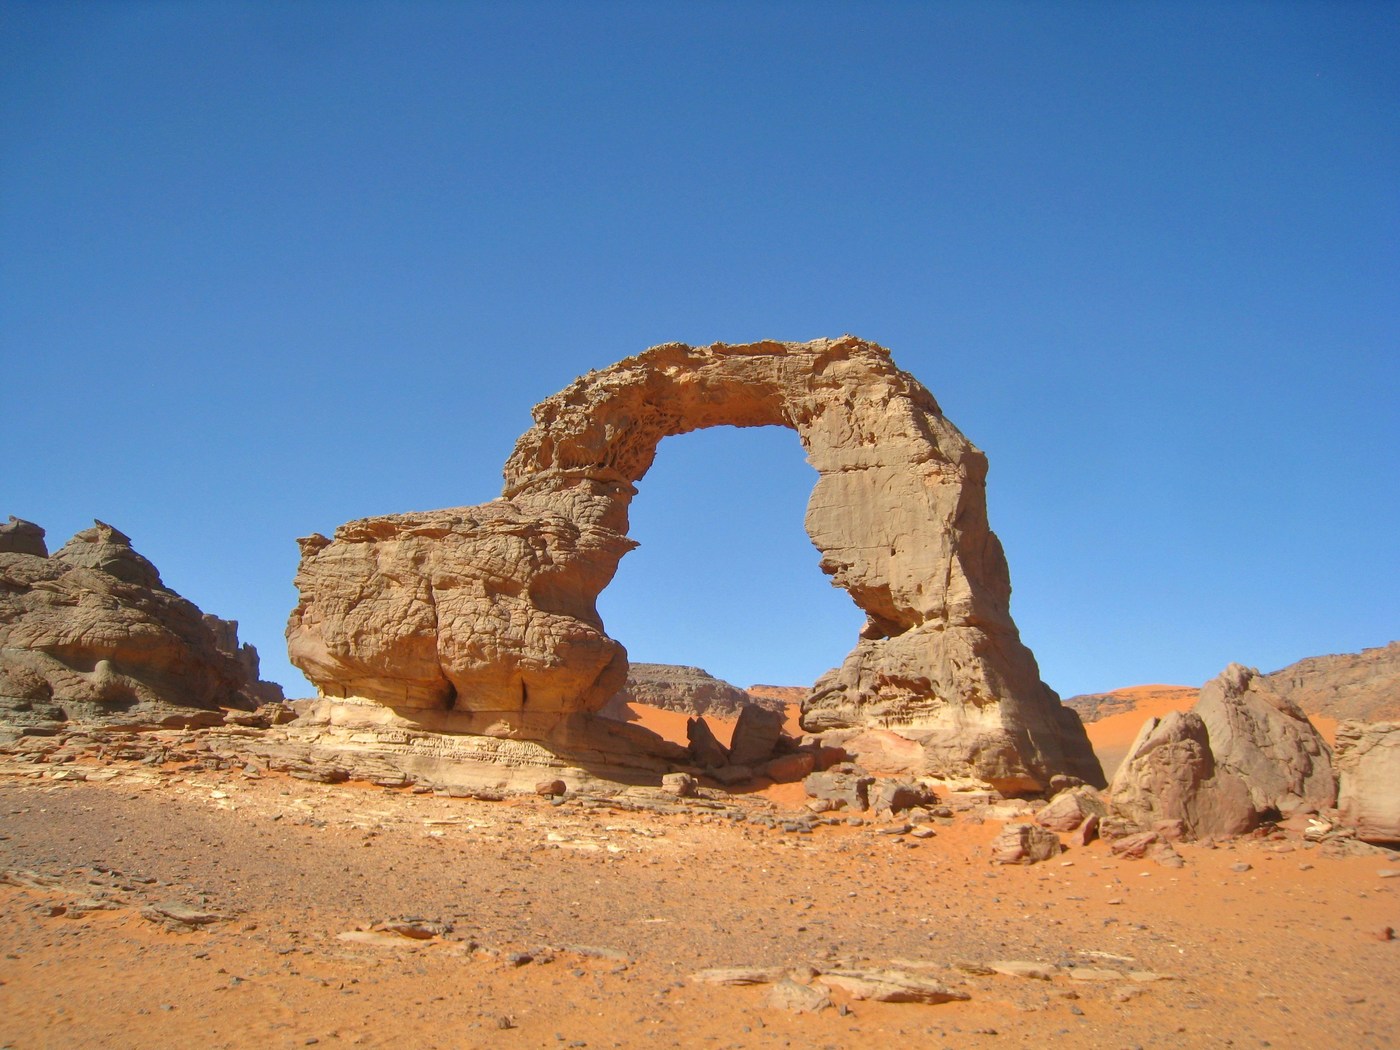 Foto genomen in de Saharay, op het bergplateau van Thadrat, in het zuidoosten van Algerije